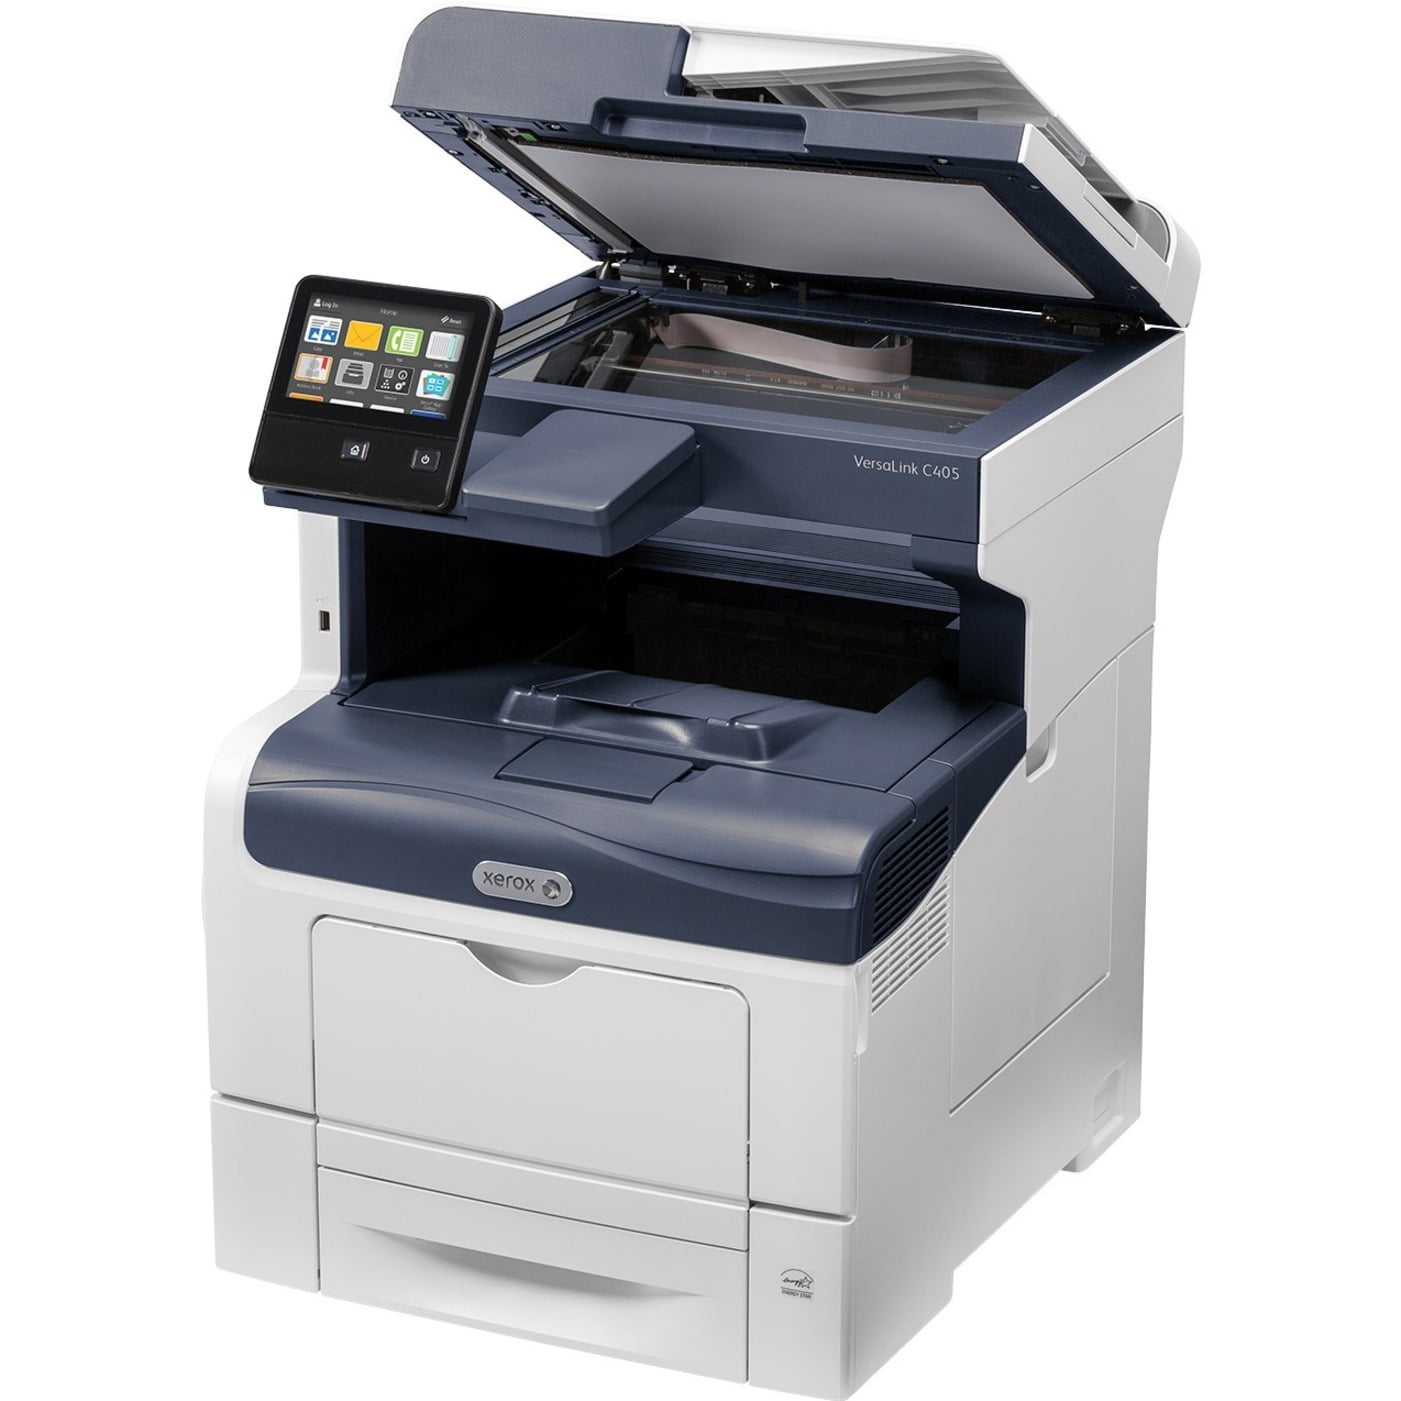  Xerox VersaLink C405 DN Laser Multifunction Printer Color Walmart 